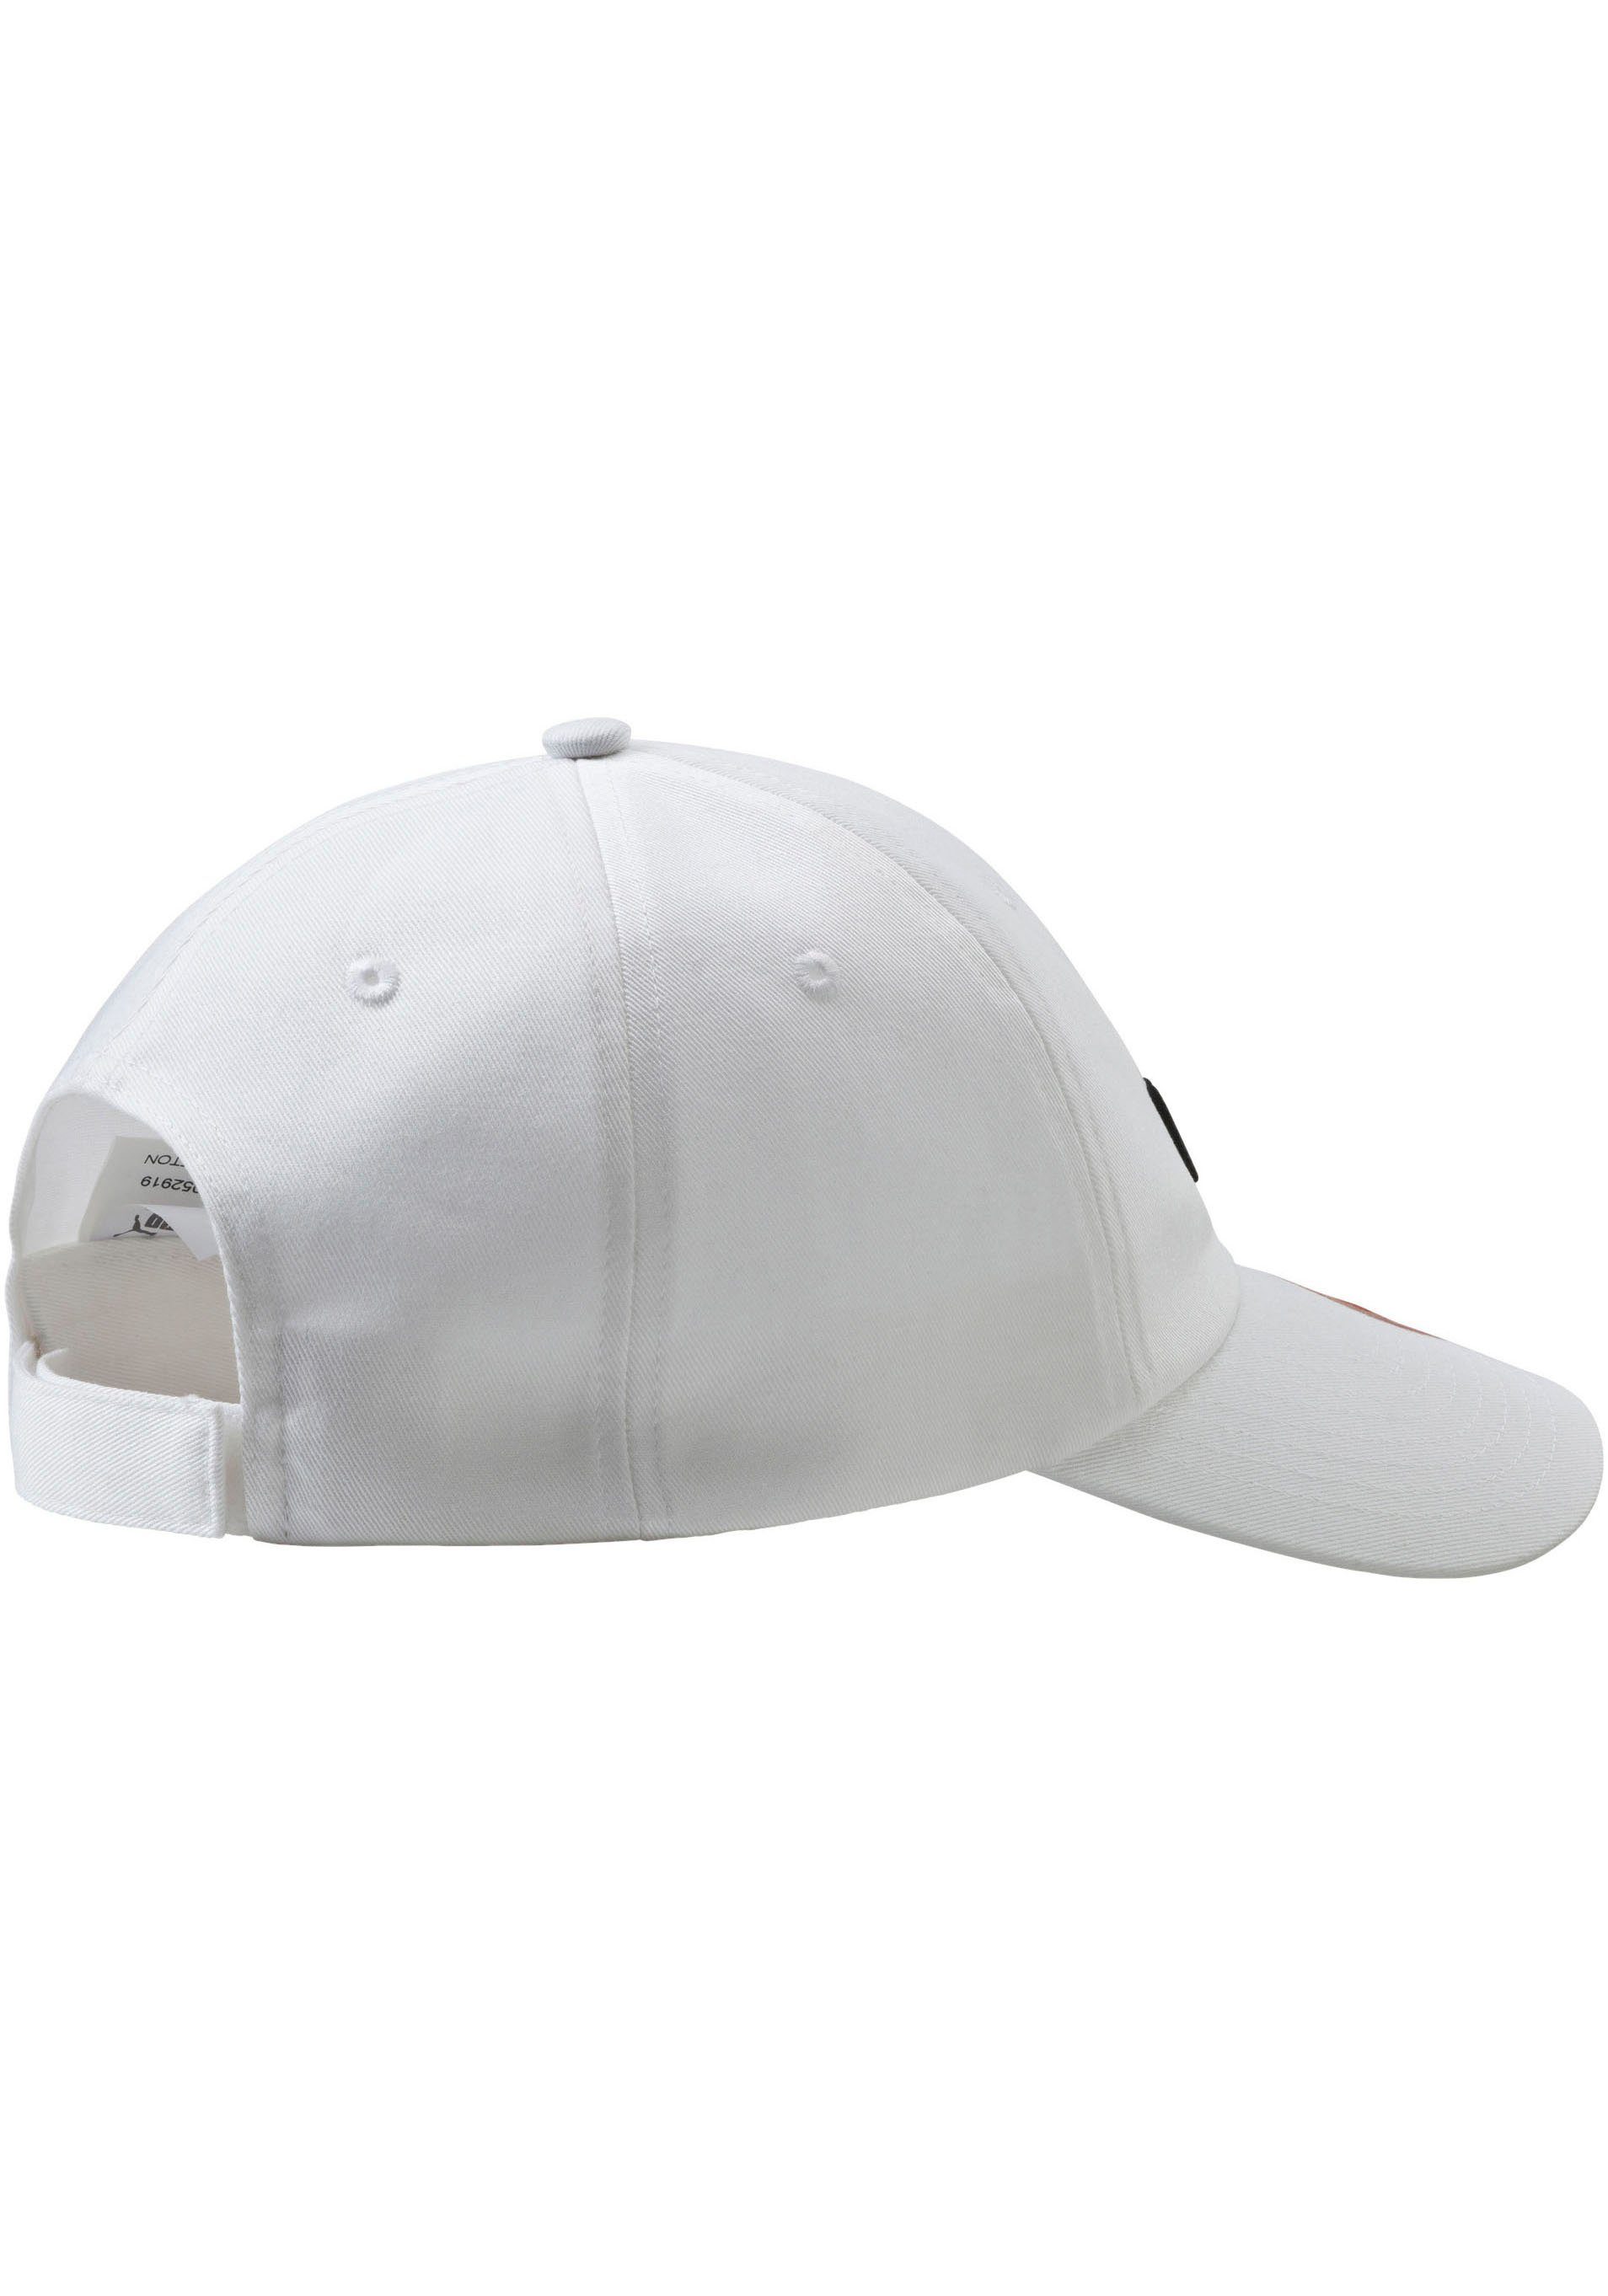 Baseball CAP ESS Cap white-No,1 PUMA